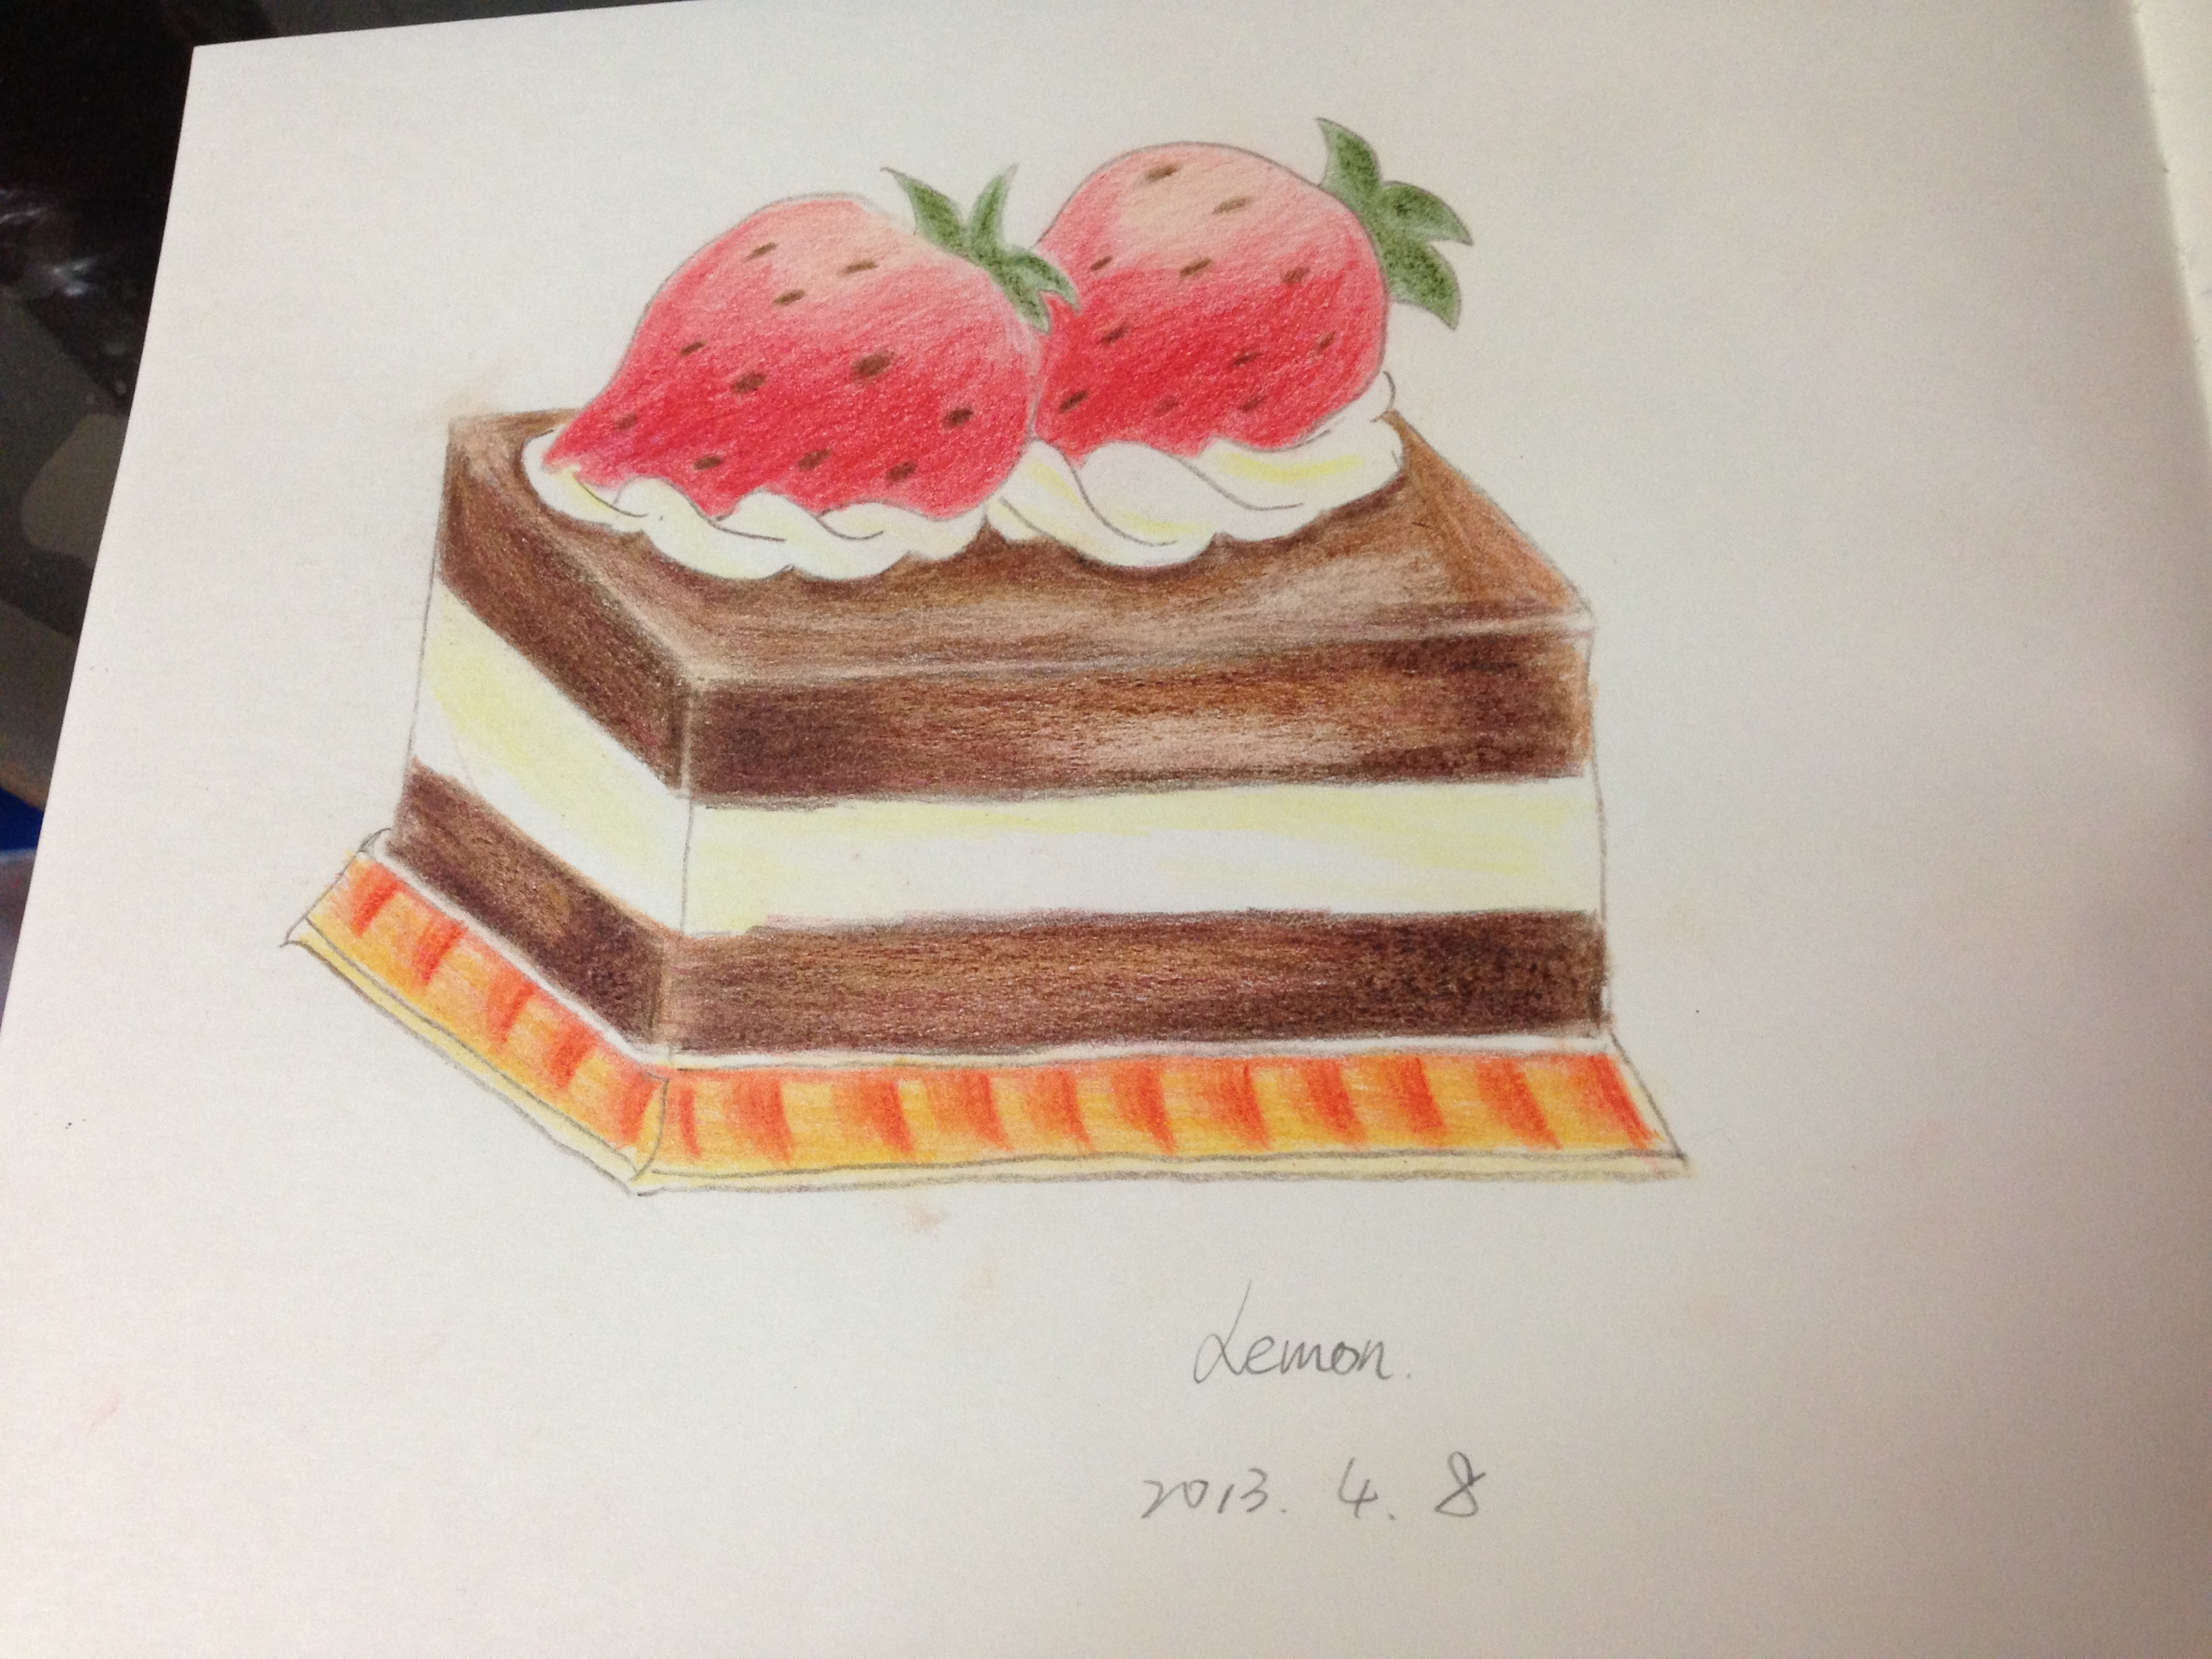 彩铅巧克力草莓蛋糕